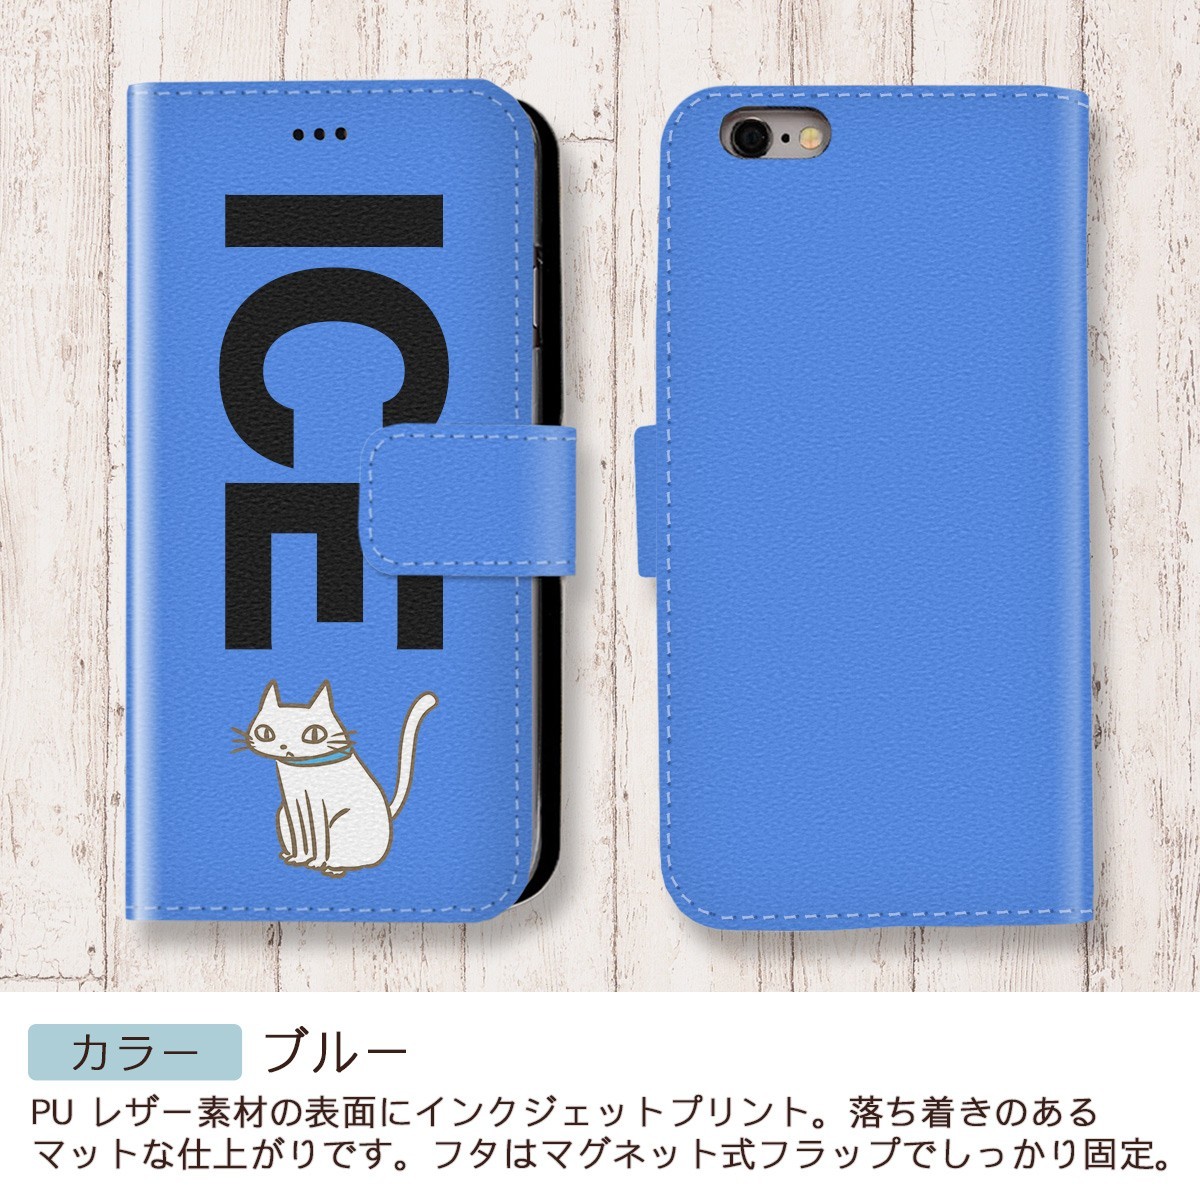 ネコ おもしろ 猫 ねこ 白 X XSケース ケース iPhone X iPhone XS ケース 手帳型 アイフォン かわいい カッコイイ メンズ レ_画像4